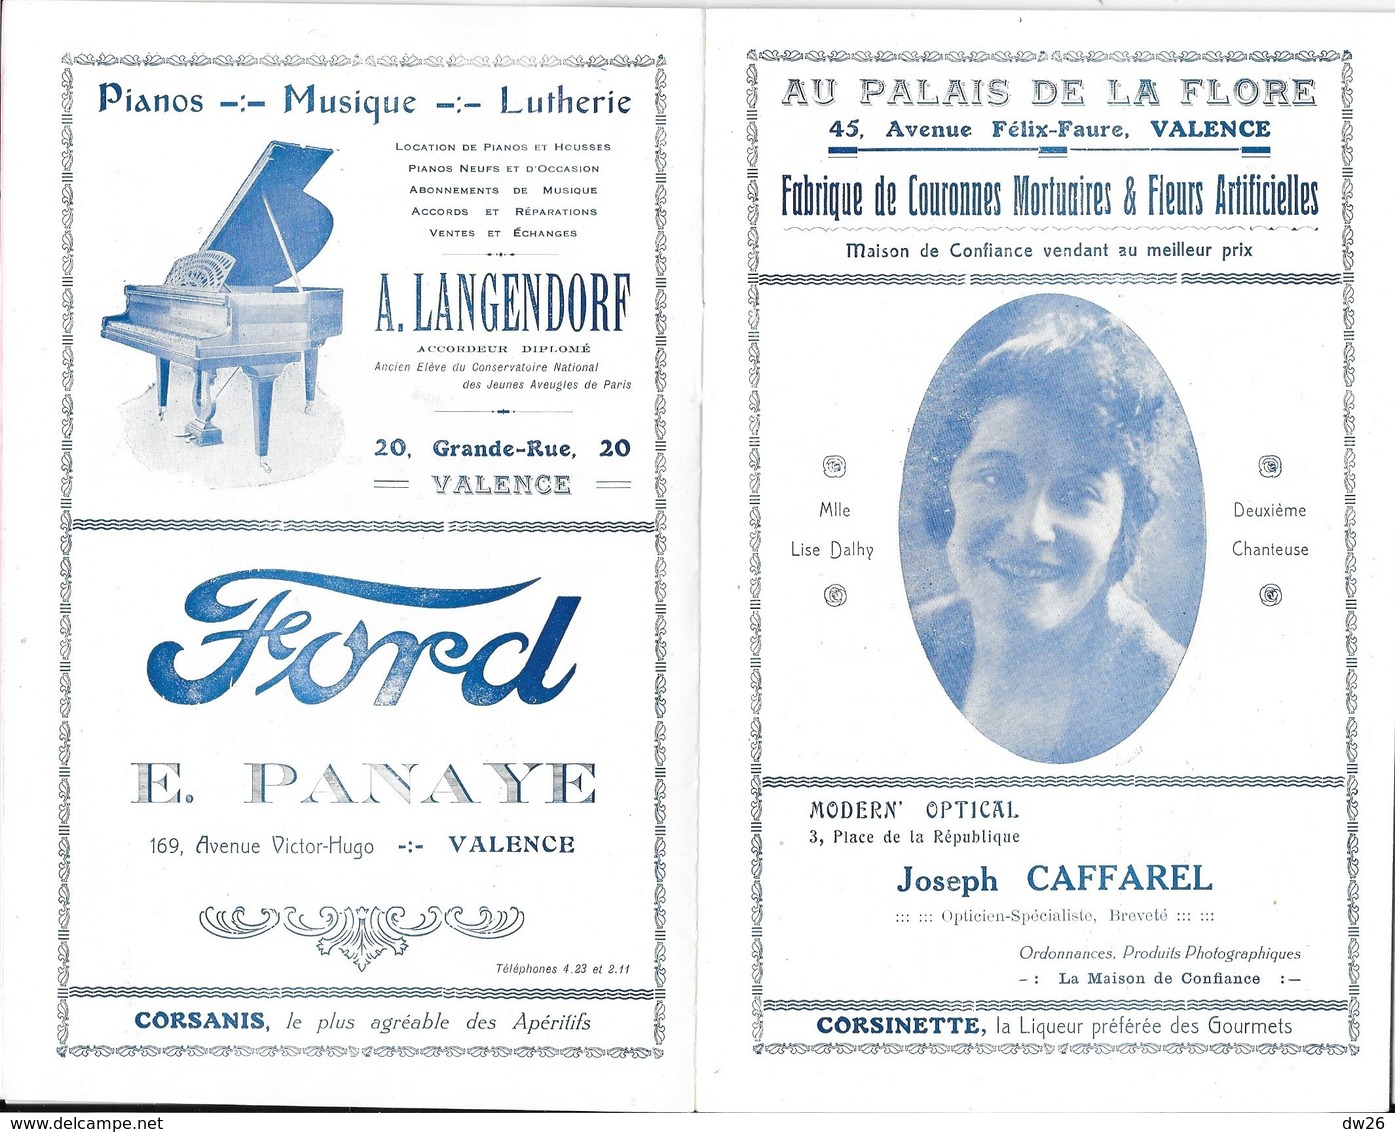 Ville De Valence - Programme Officiel De L'Opéra Municipal, Saison 1925-26 - Opérette: P.L.M., Artistes - Programme